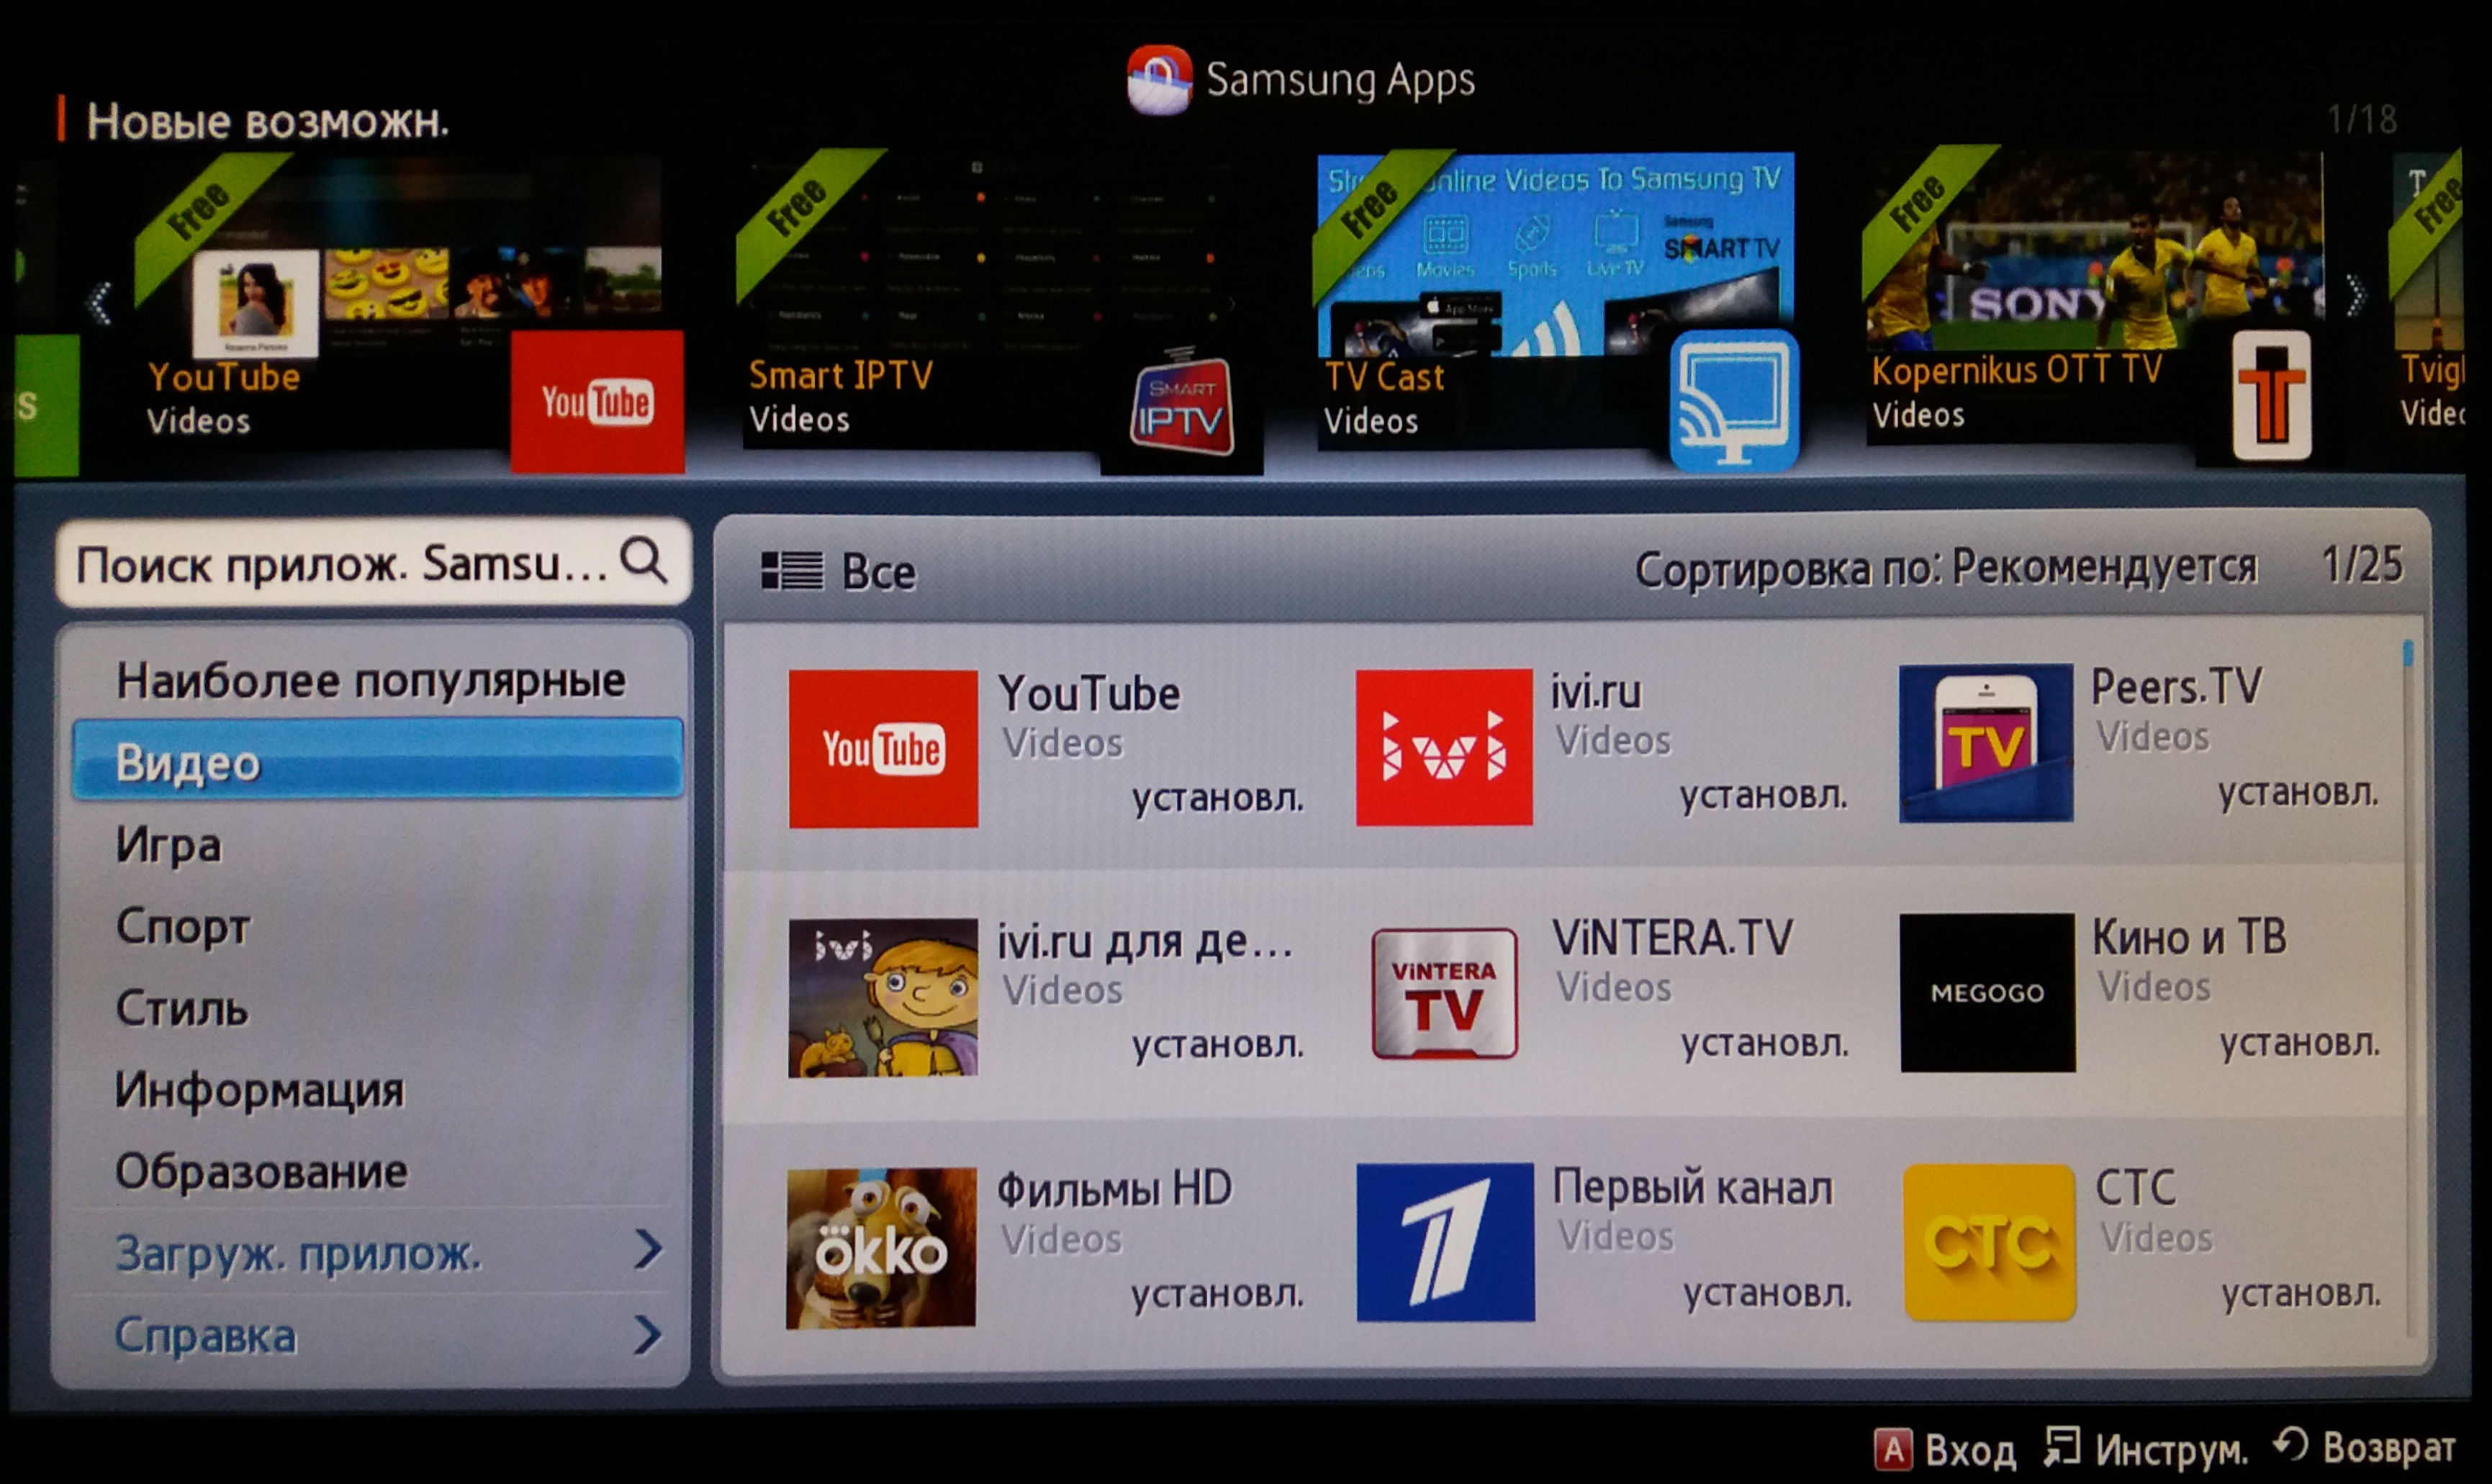 Программа для просмотра с телефона на телевизор. Samsung телевизор Smart TV 2013. Телевизор самсунг с ютубом. Как установить приложение на телевизор. Samsung apps на телевизоре.